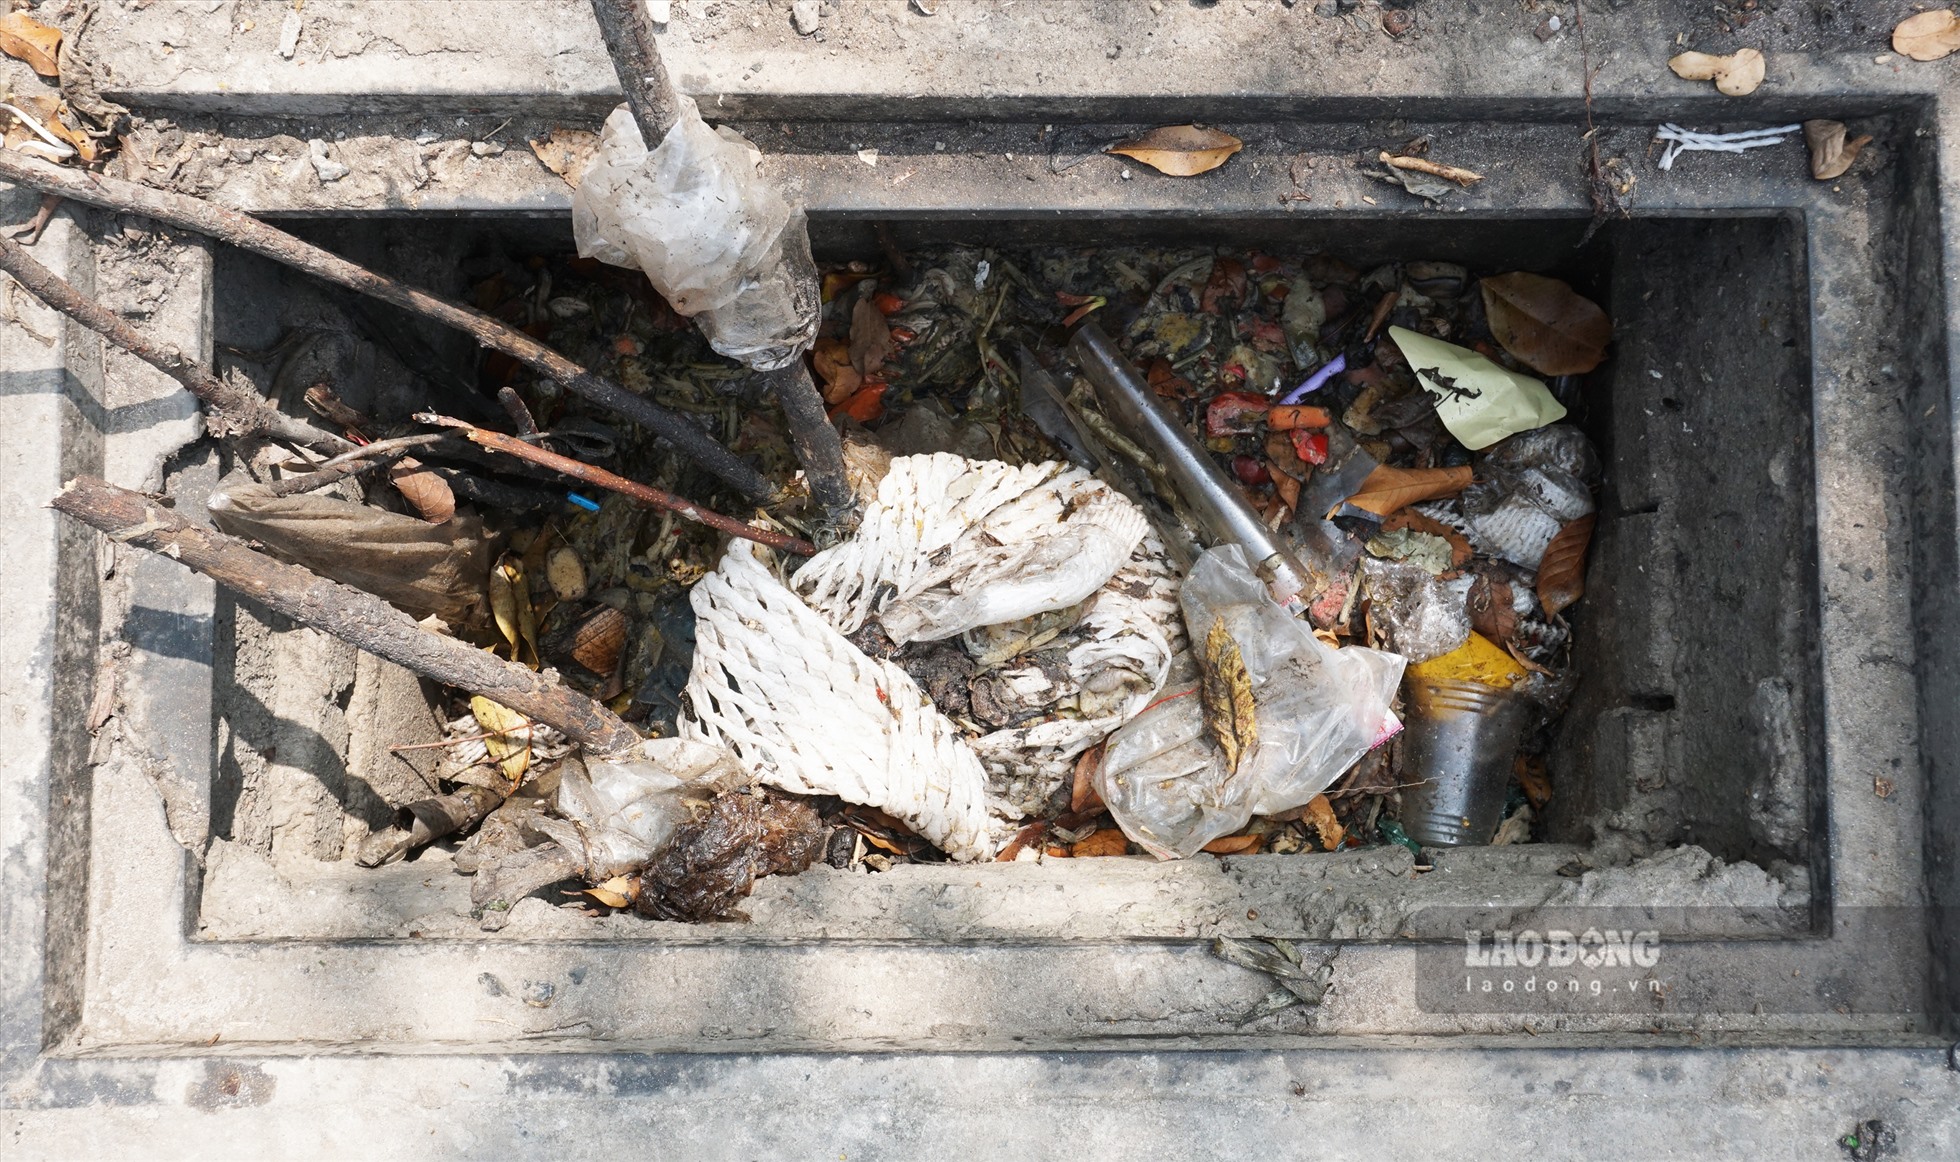 Hố ga cũng trở thành nơi đổ rác thải sinh hoạt gây ô nhiễm môi trường.